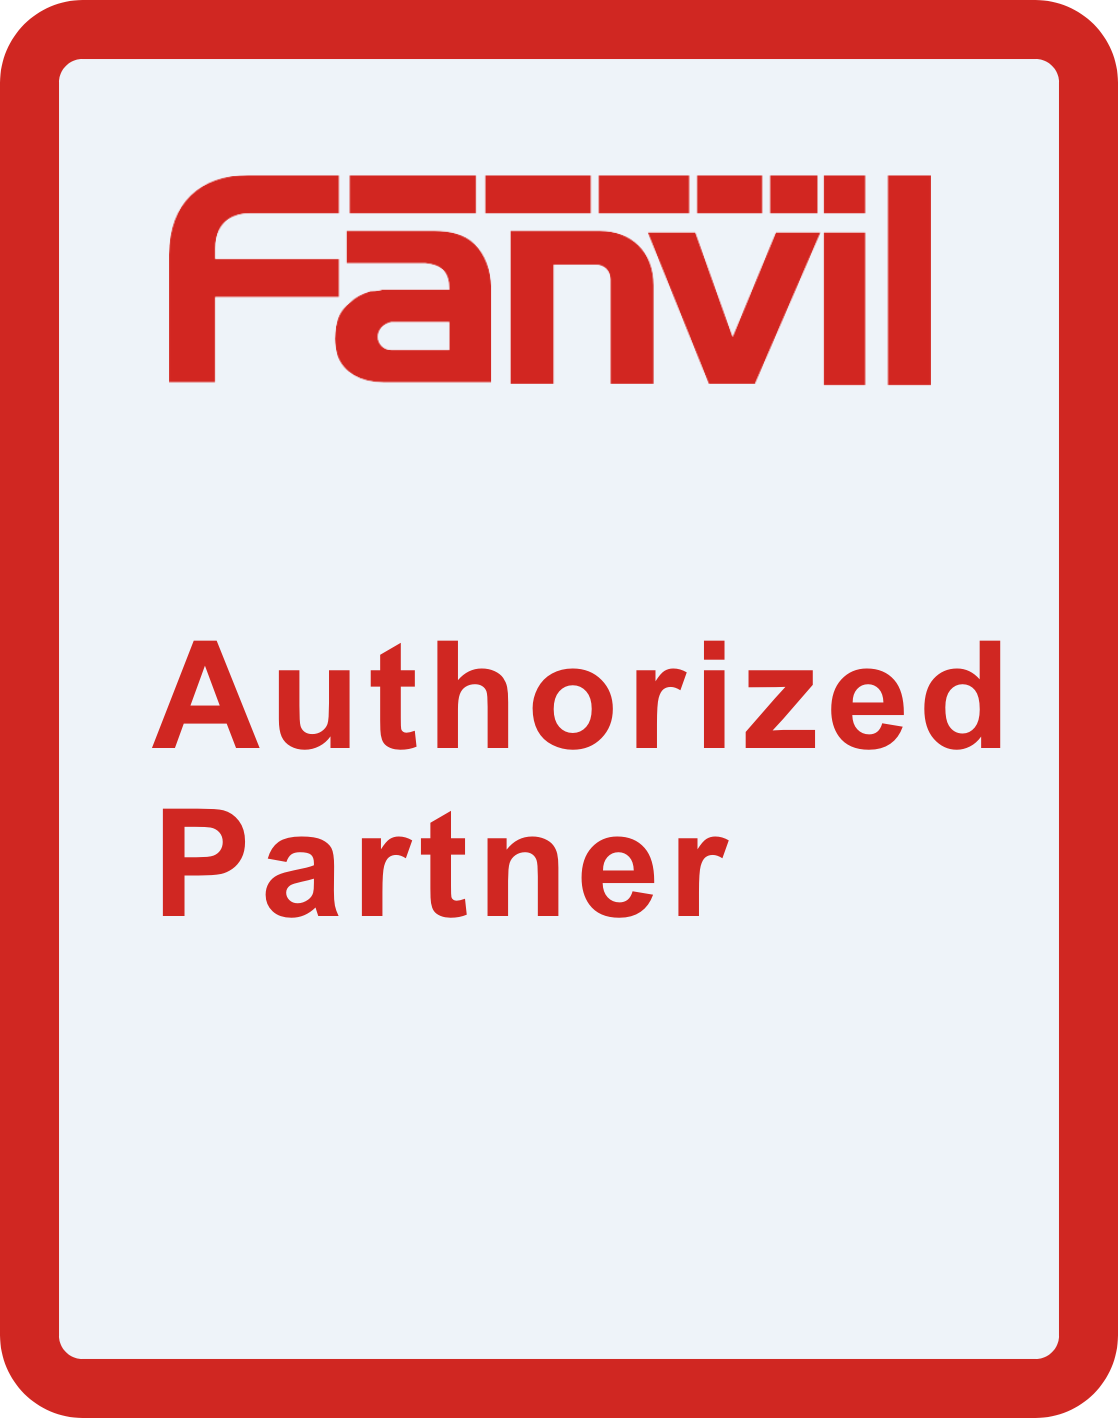 X-Com вошла в число партнеров Fanvil